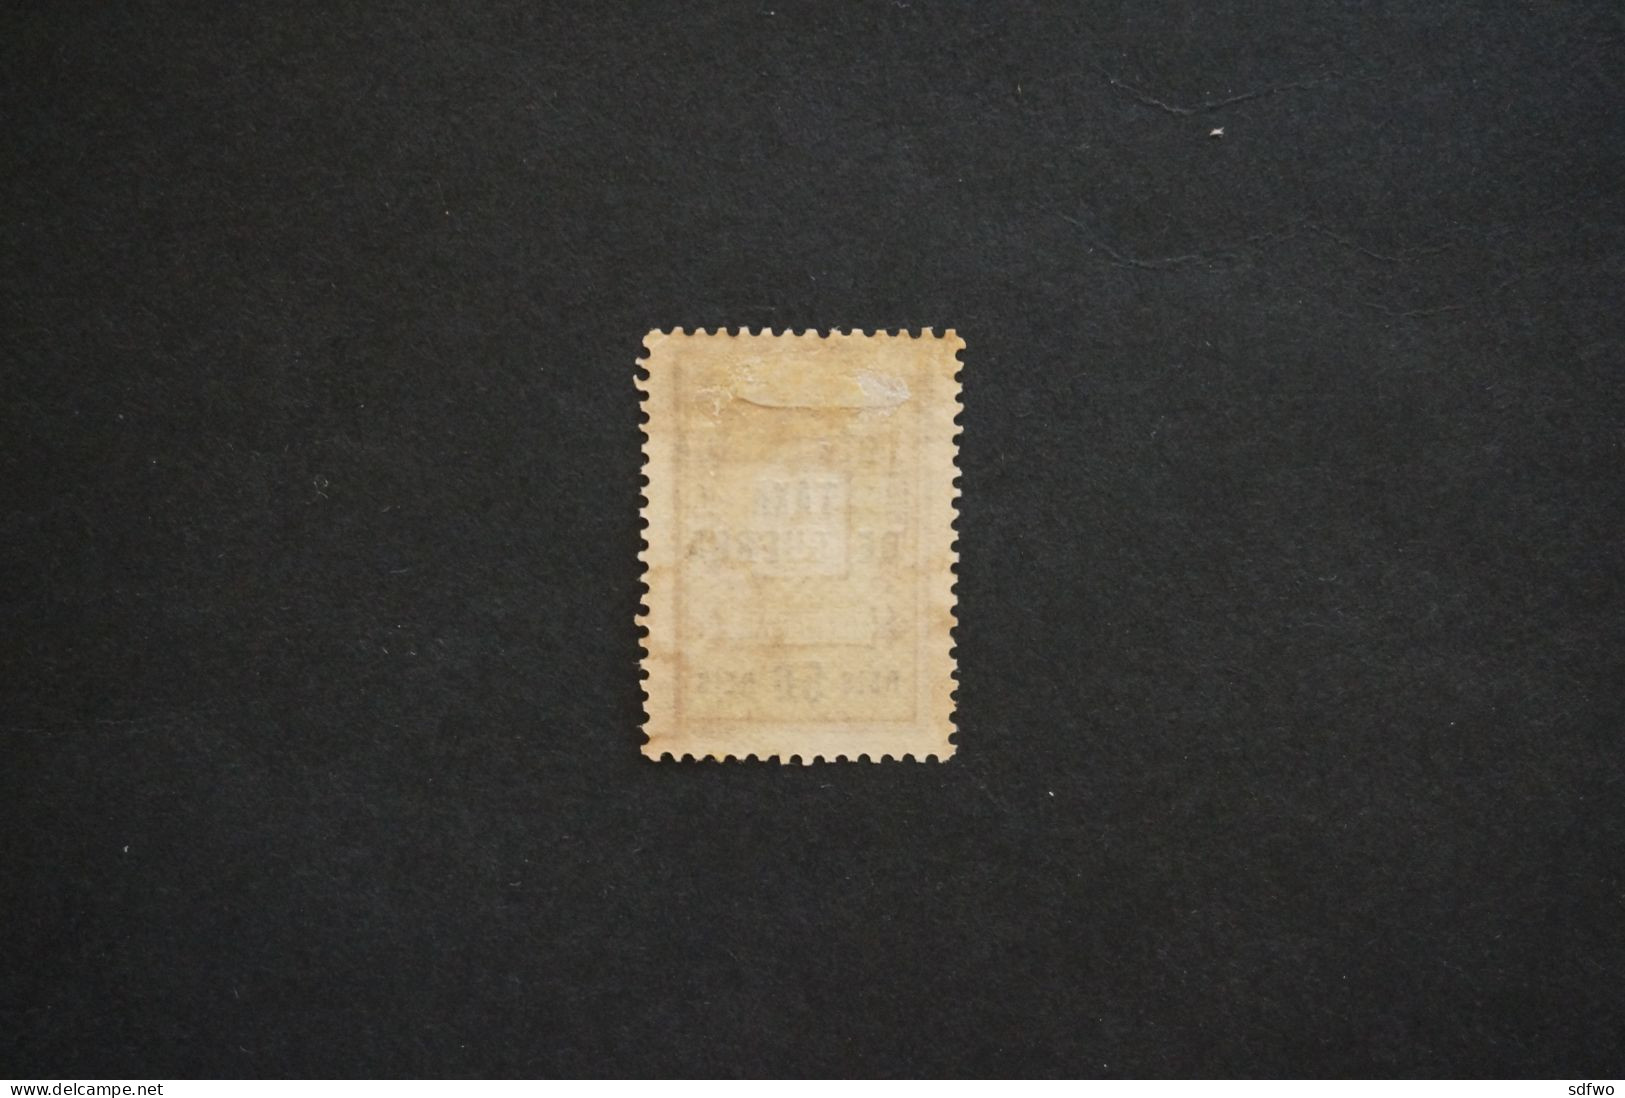 (T1) Portuguese Guinea - 1919  War Tax Stamp - TAXA DE GUERRA - 50 R (MH - No Gum) - Portuguese Guinea